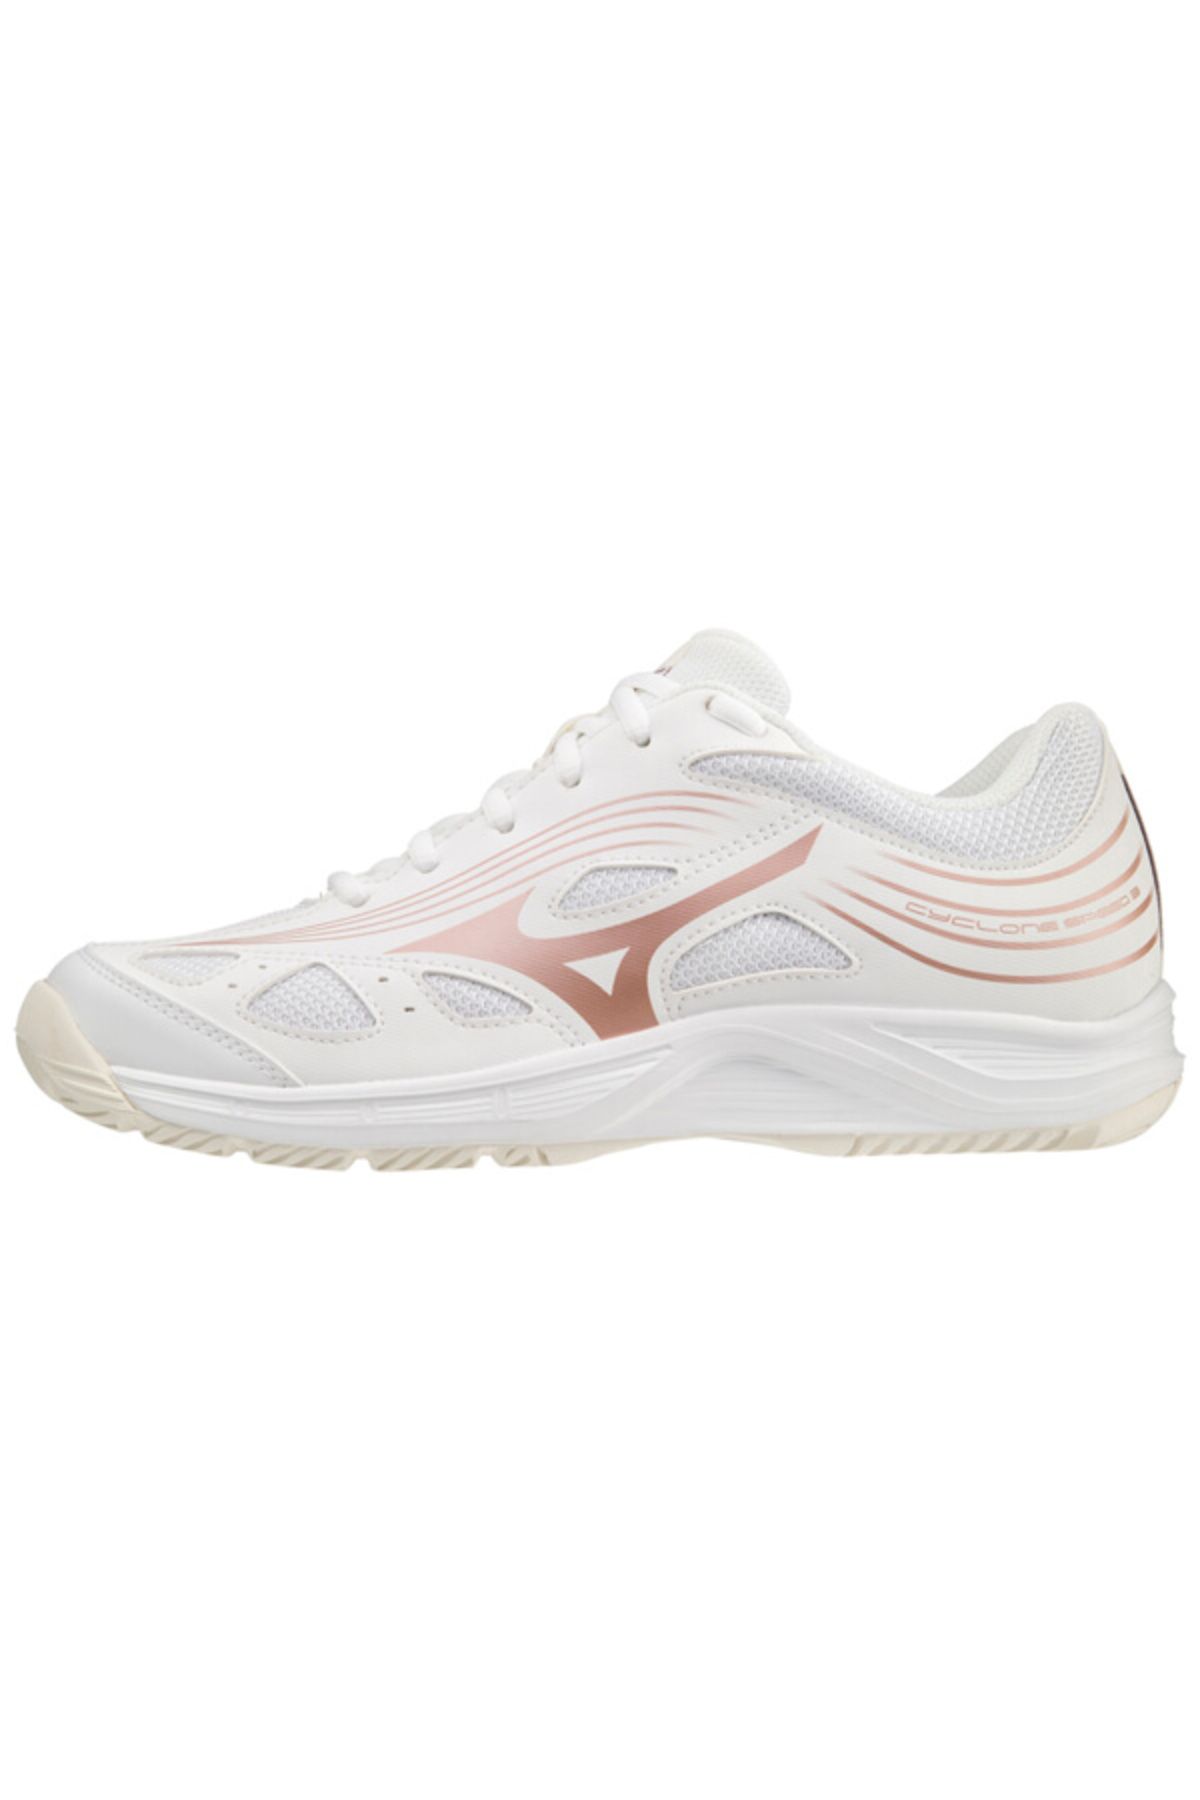 Mizuno Cyclone Speed 3 Kadın Salon Ayakkabısı Beyaz